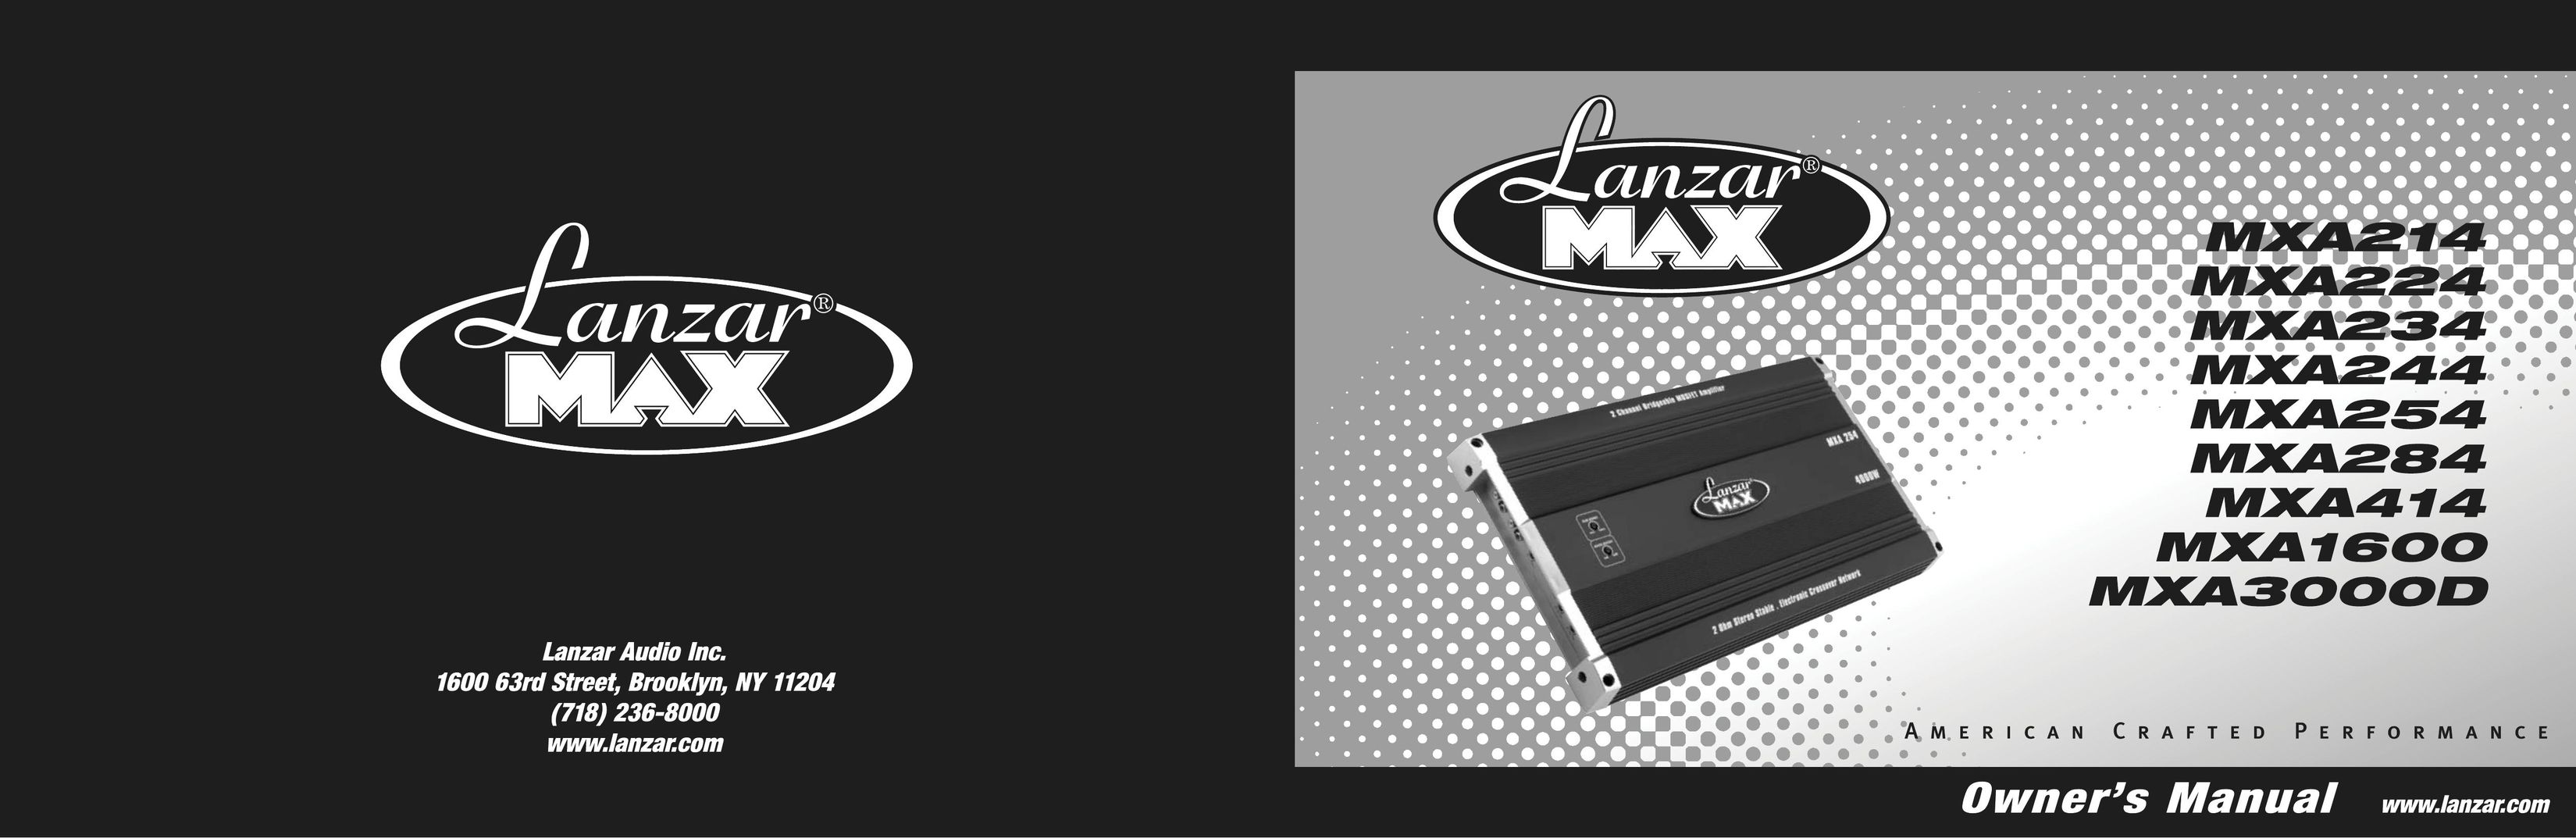 Lanzar Car Audio MXA244 Car Amplifier User Manual